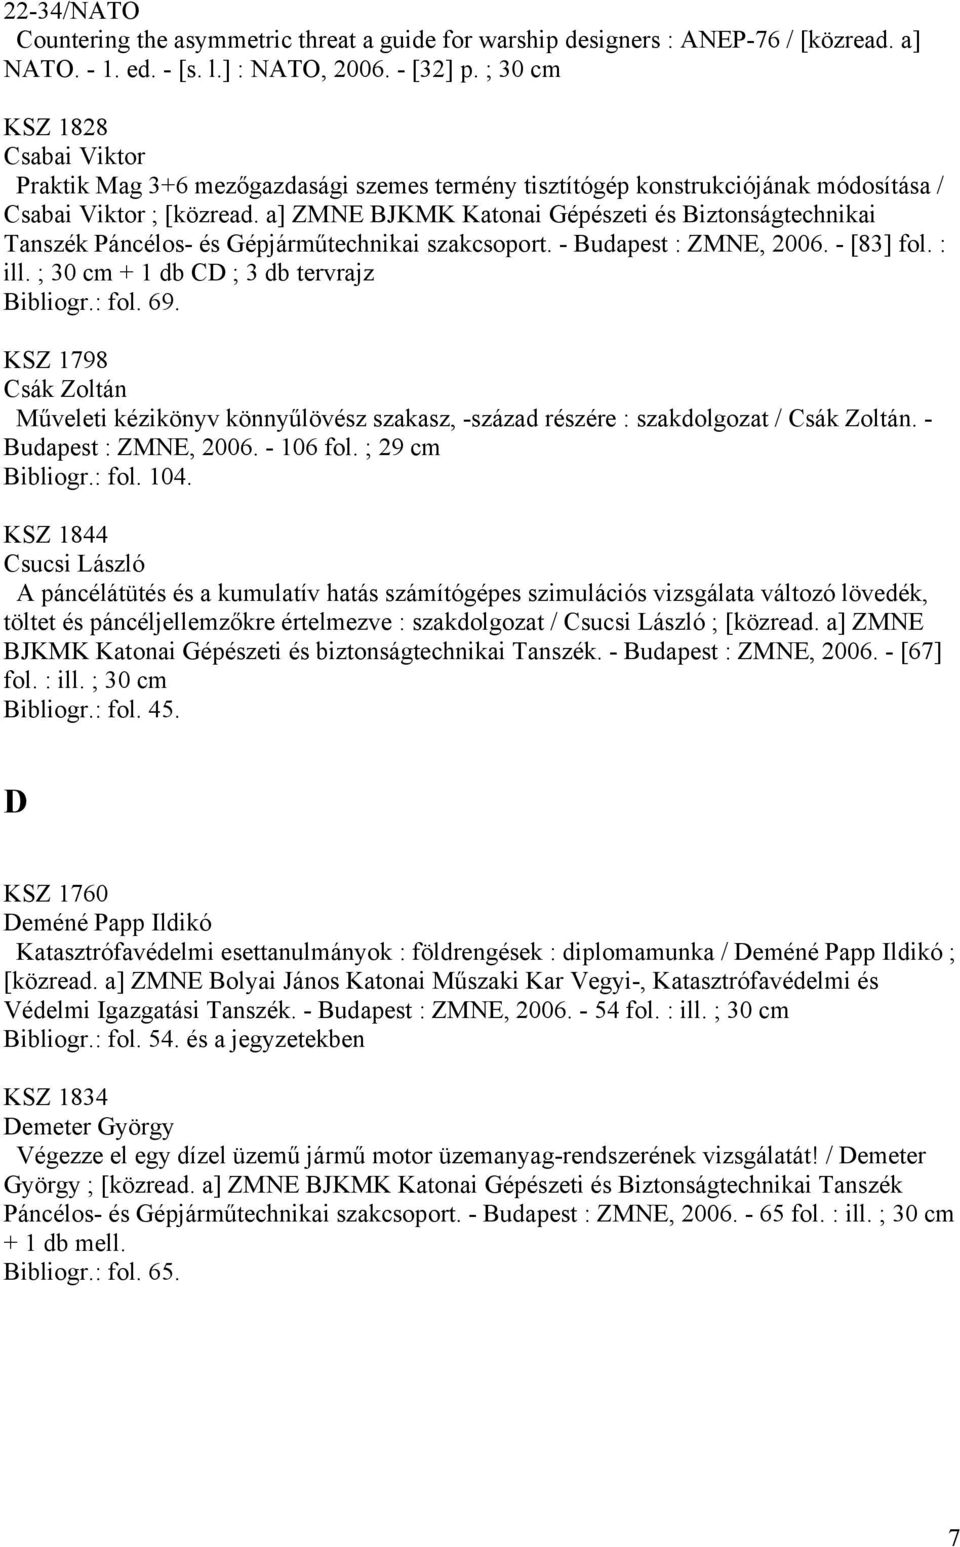 a] ZMNE BJKMK Katonai Gépészeti és Biztonságtechnikai Tanszék Páncélos- és Gépjárműtechnikai szakcsoport. - Budapest : ZMNE, 2006. - [83] fol. : ill. ; 30 cm + 1 db CD ; 3 db tervrajz Bibliogr.: fol.